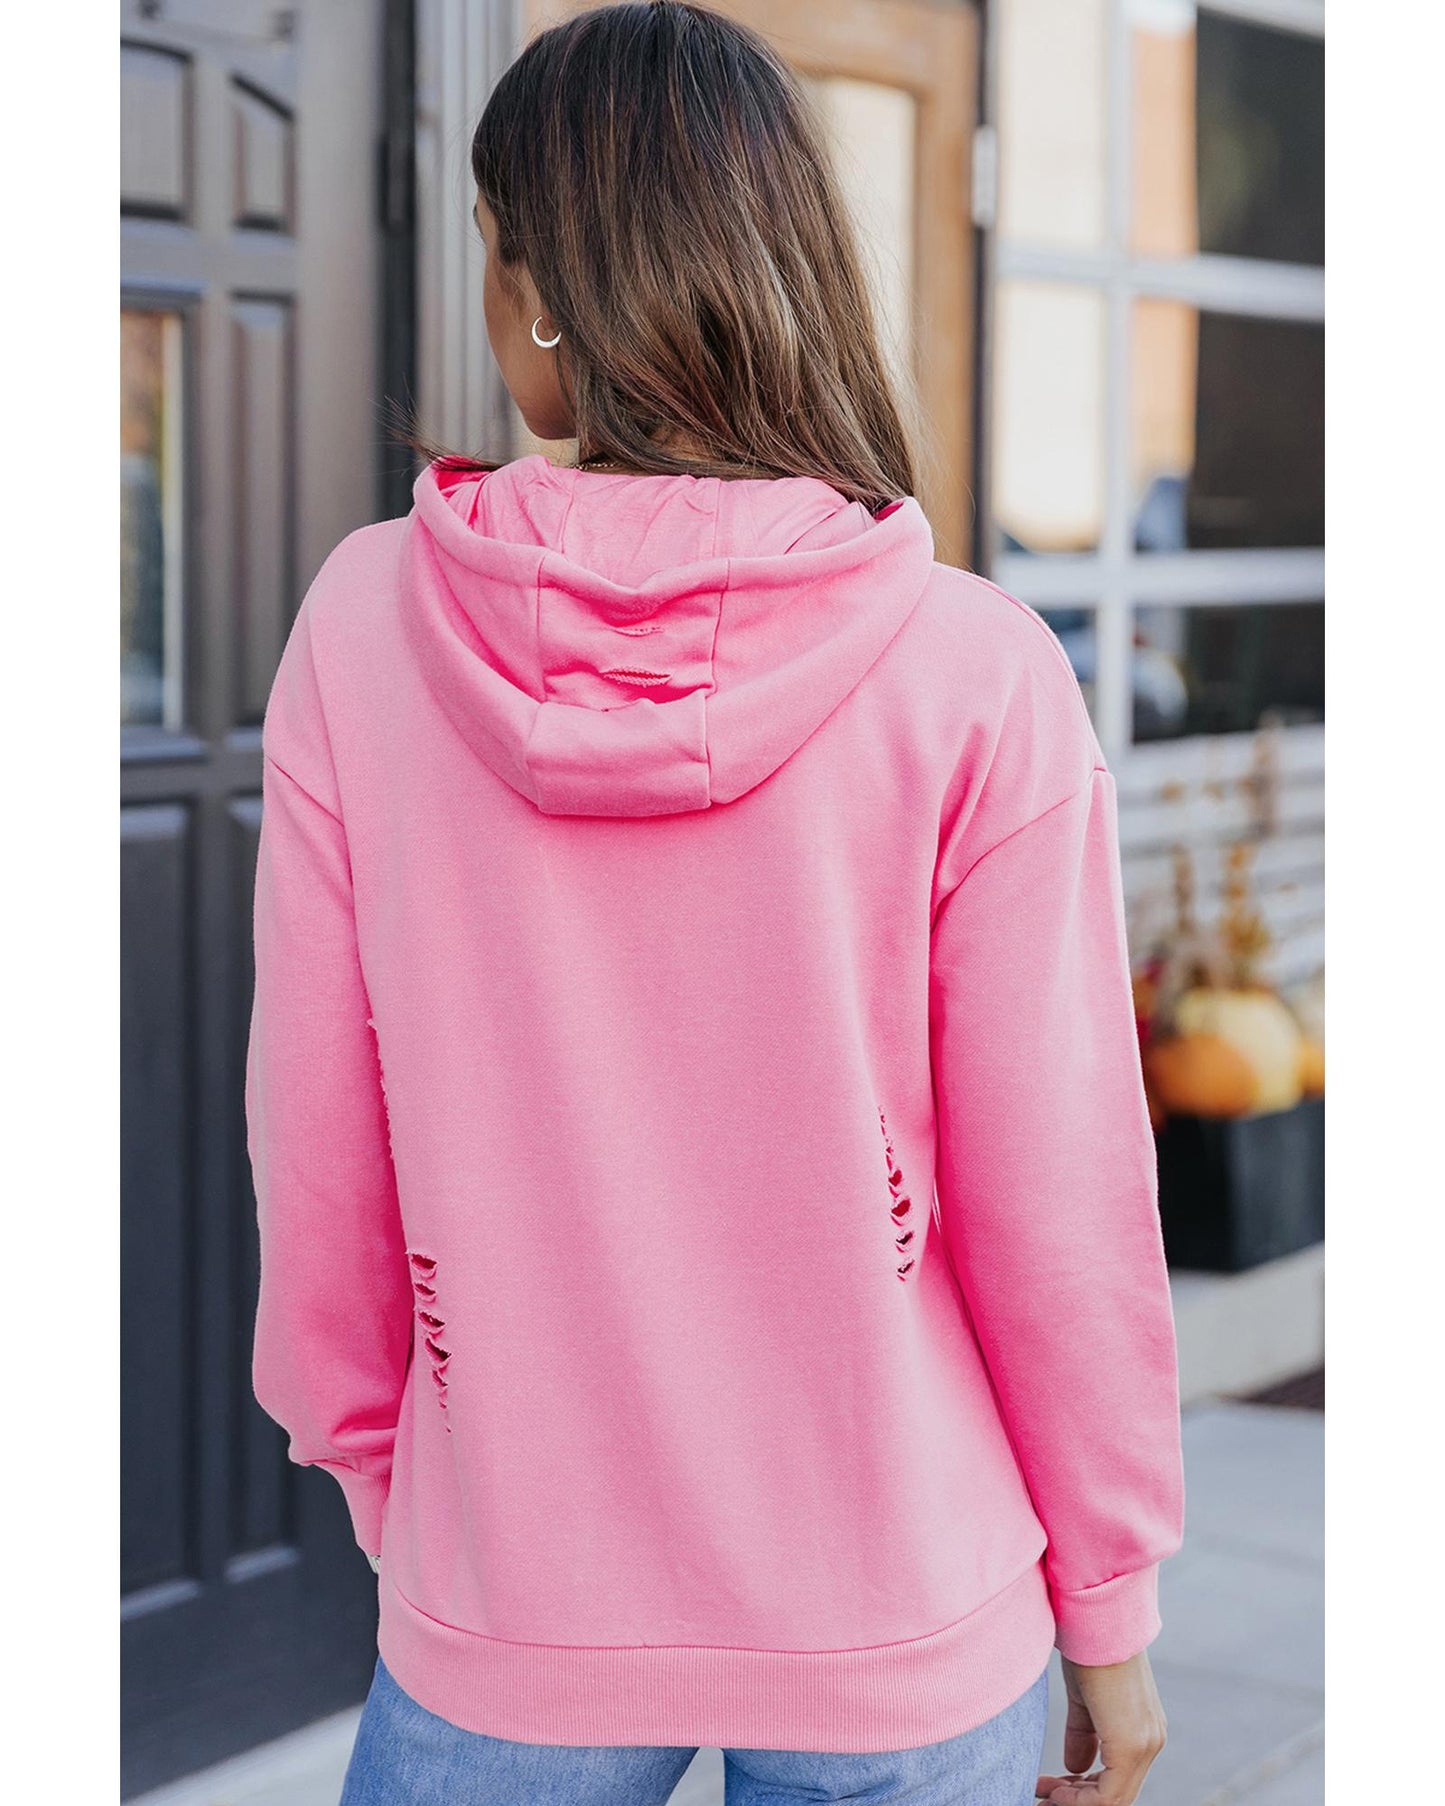 Azura Exchange Ripped Hooded Sweatshirt with Kangaroo Pocket - XL